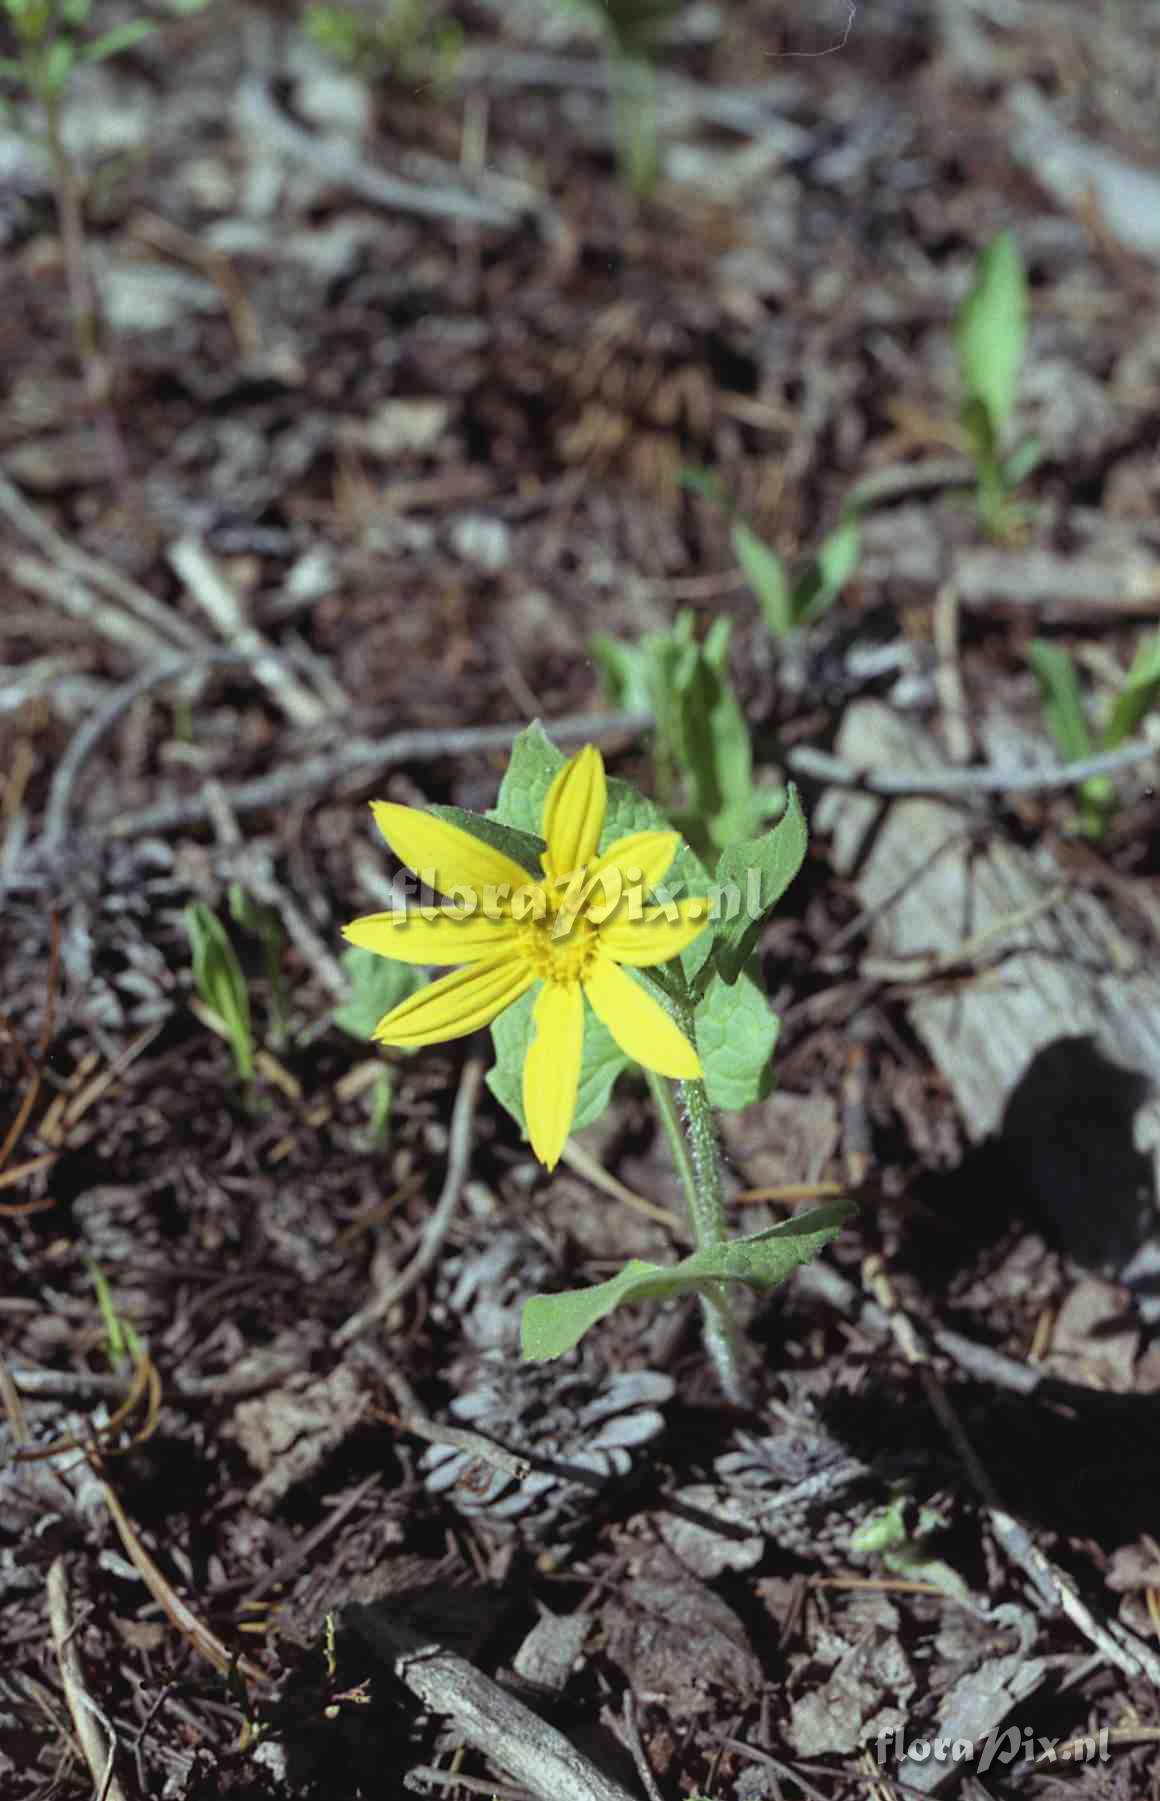 Arnica cordifolia